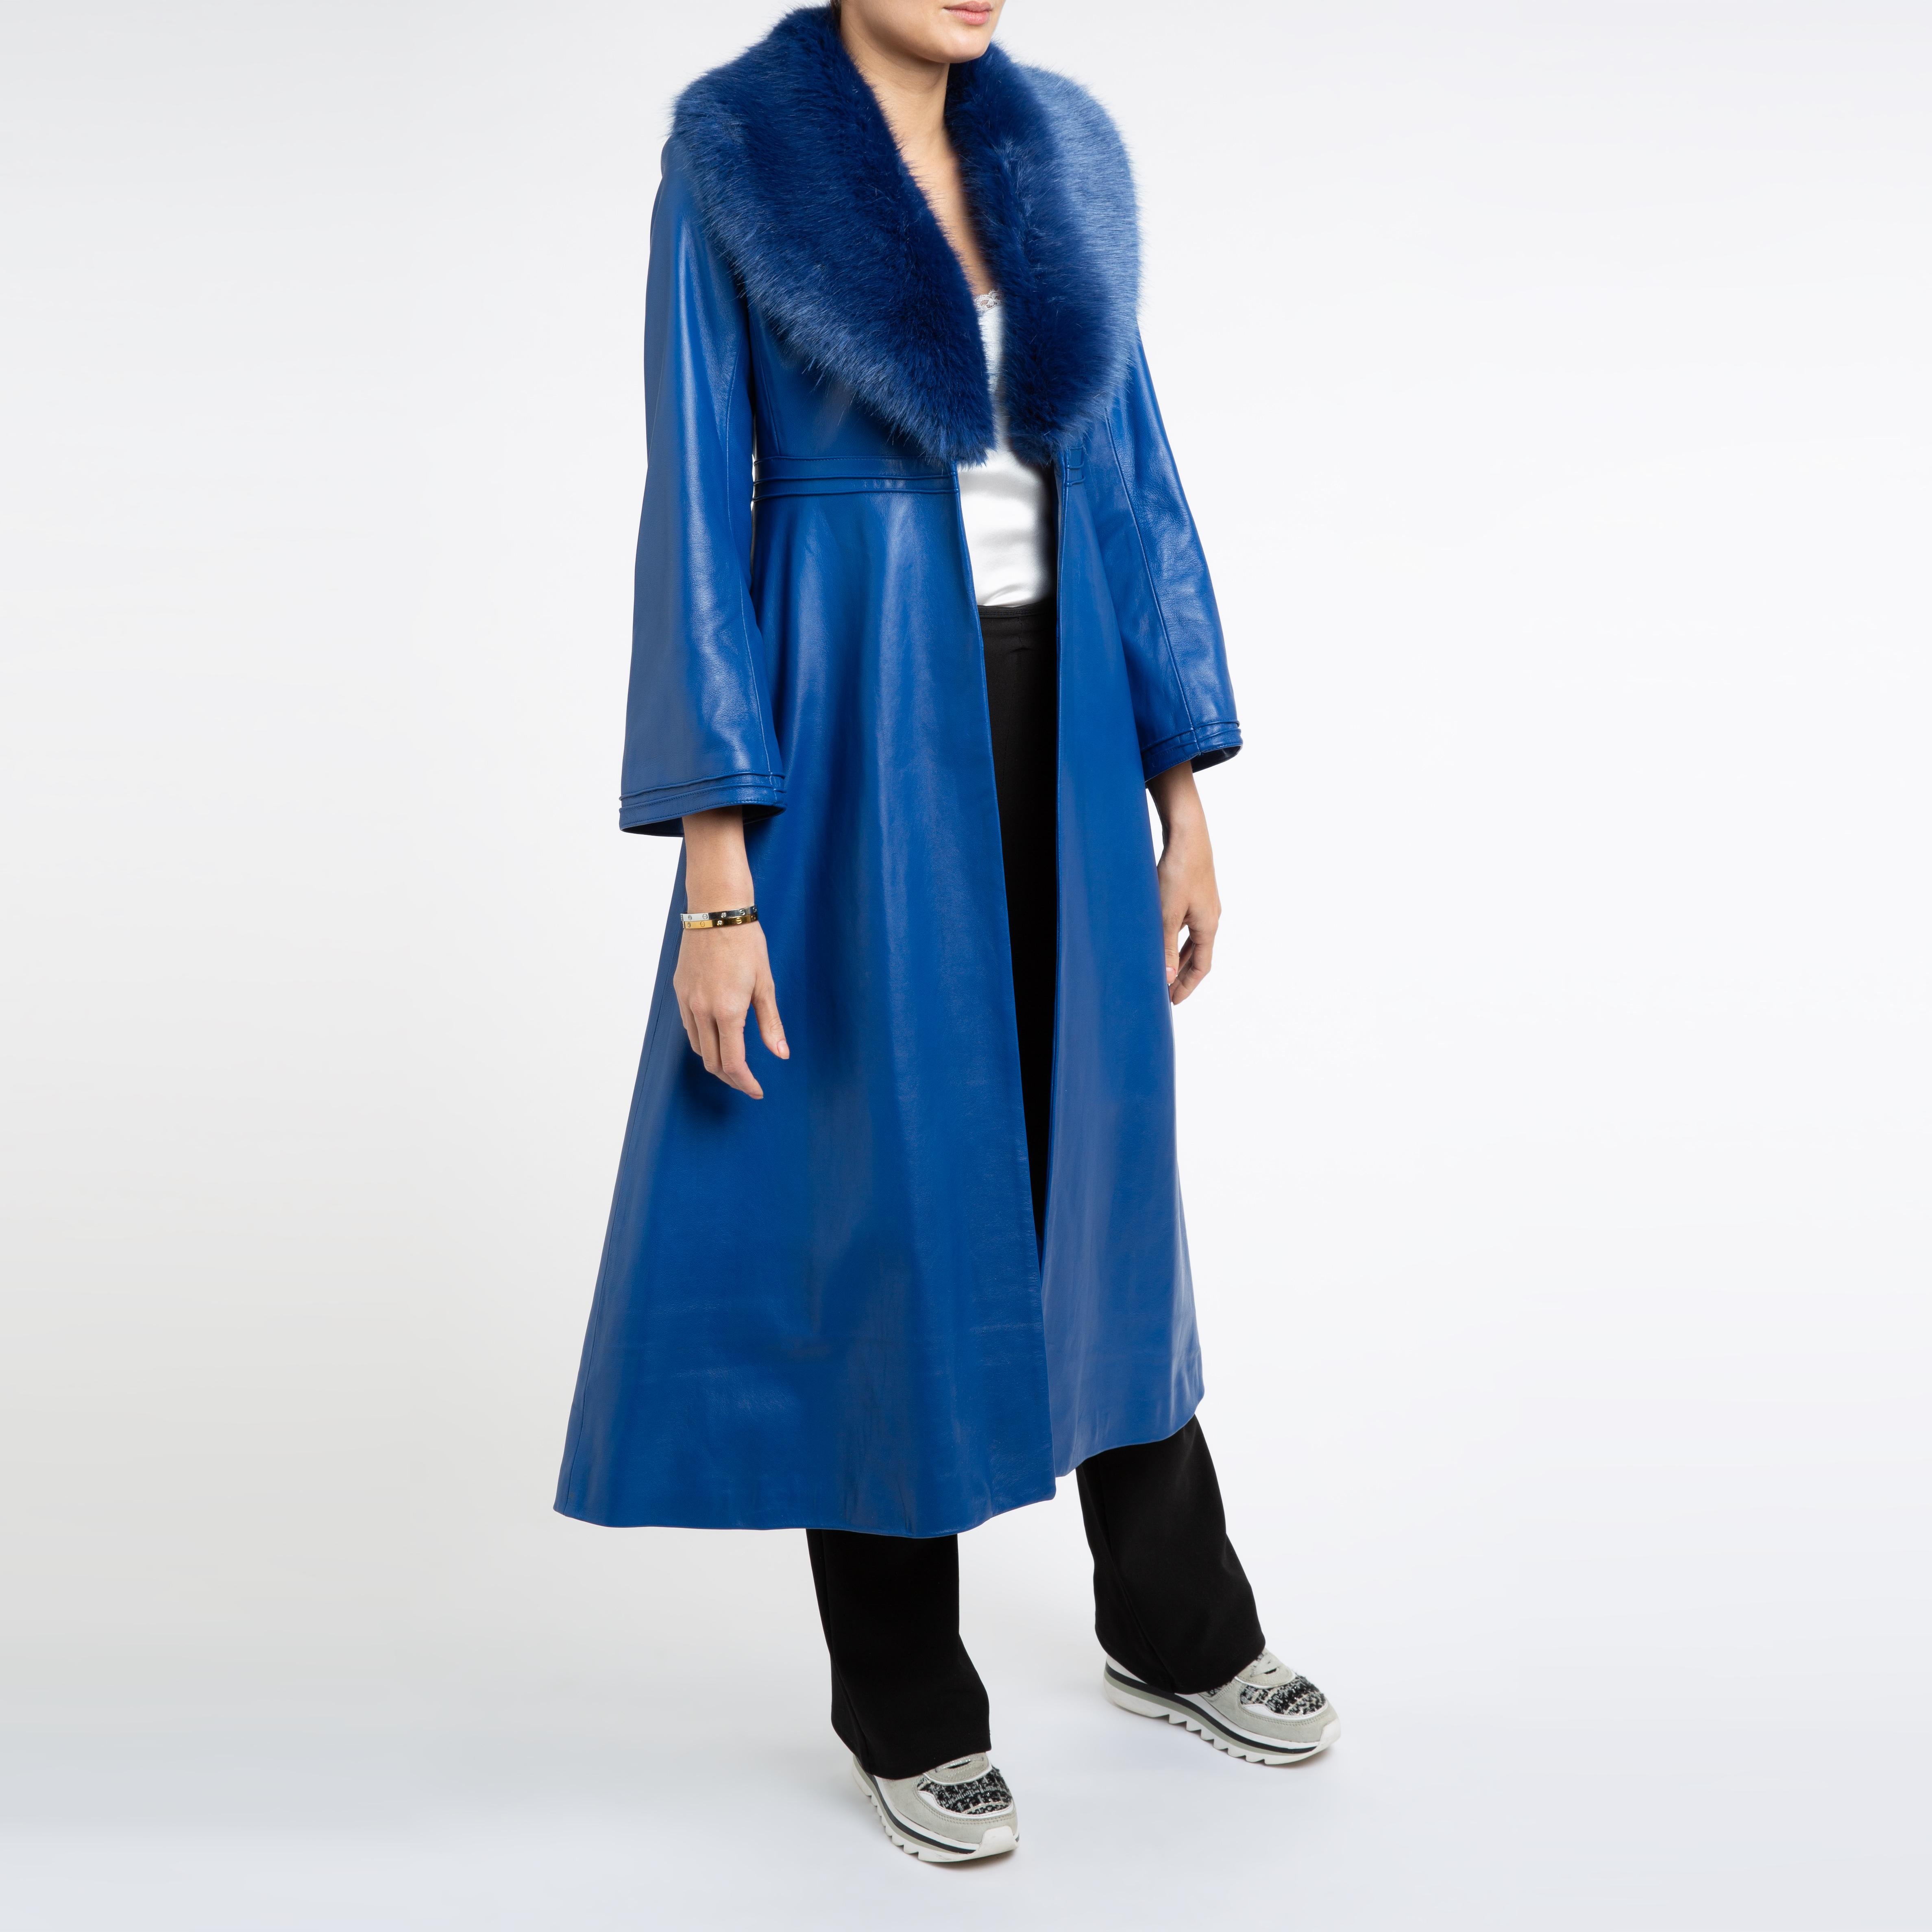 Verheyen London Edward Leather Coat in Blue with Faux Fur - Size uk 12 For Sale 4